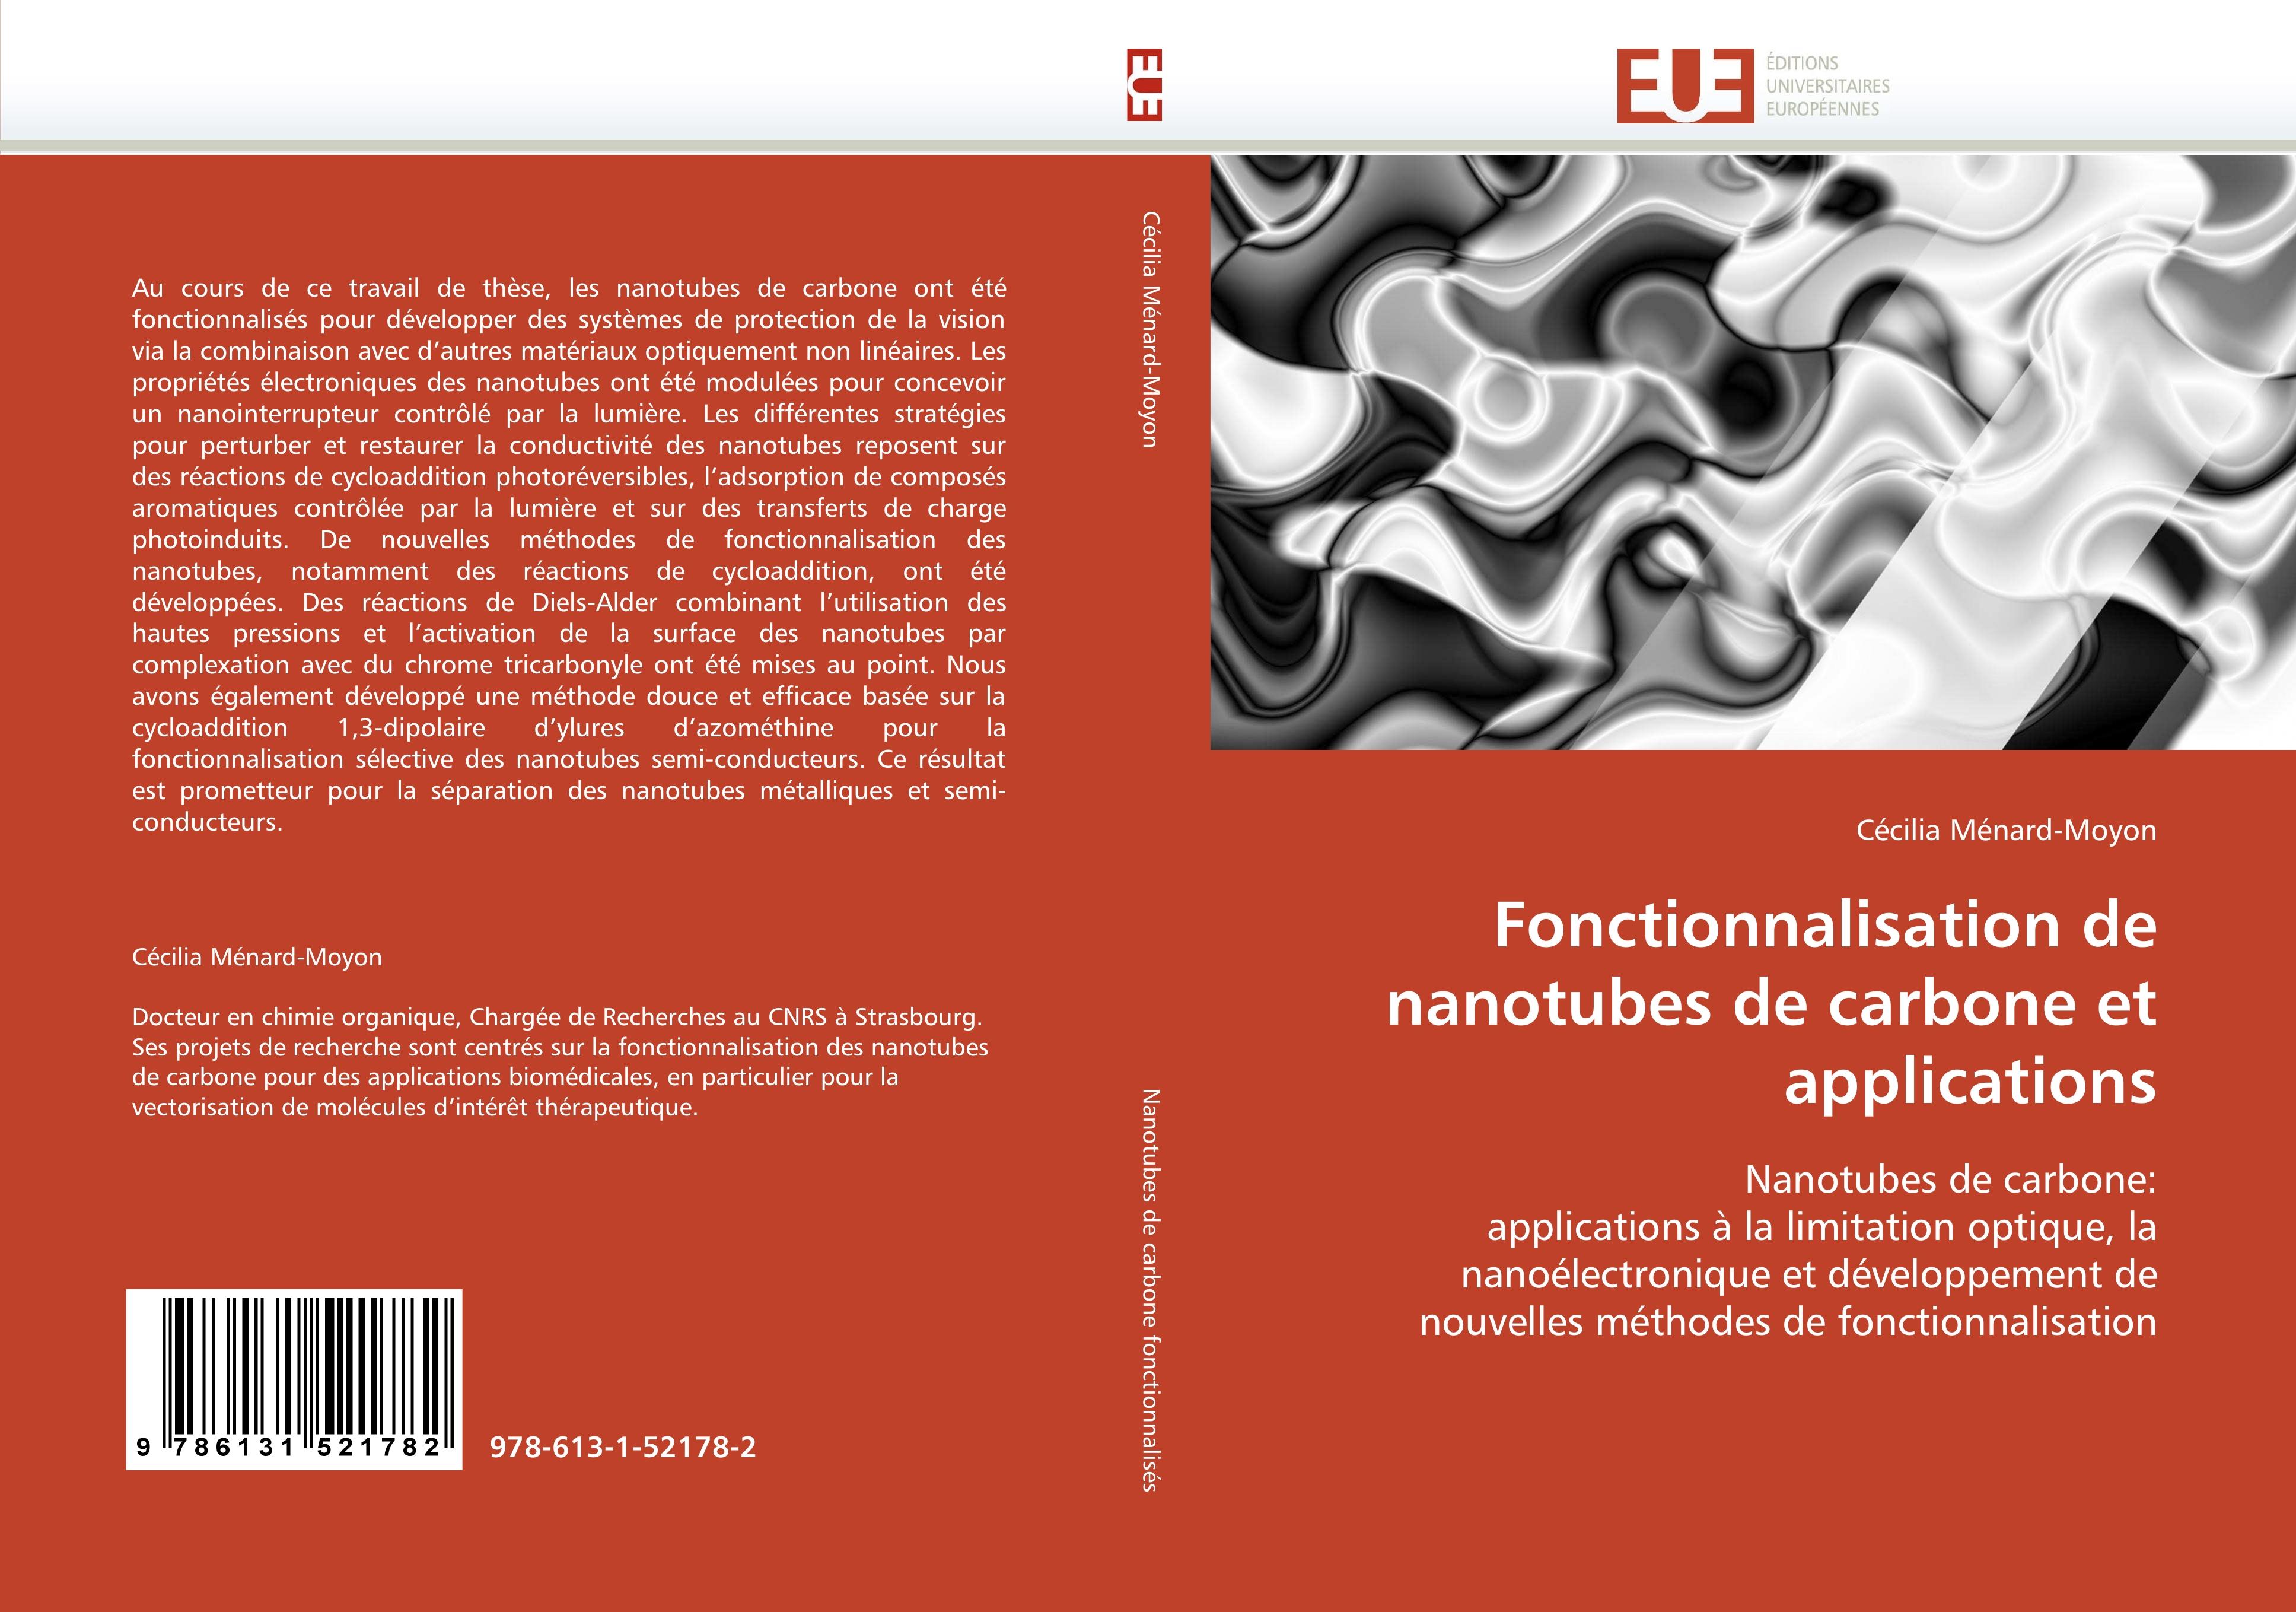 Fonctionnalisation de nanotubes de carbone et applications - Cécilia Ménard-Moyon